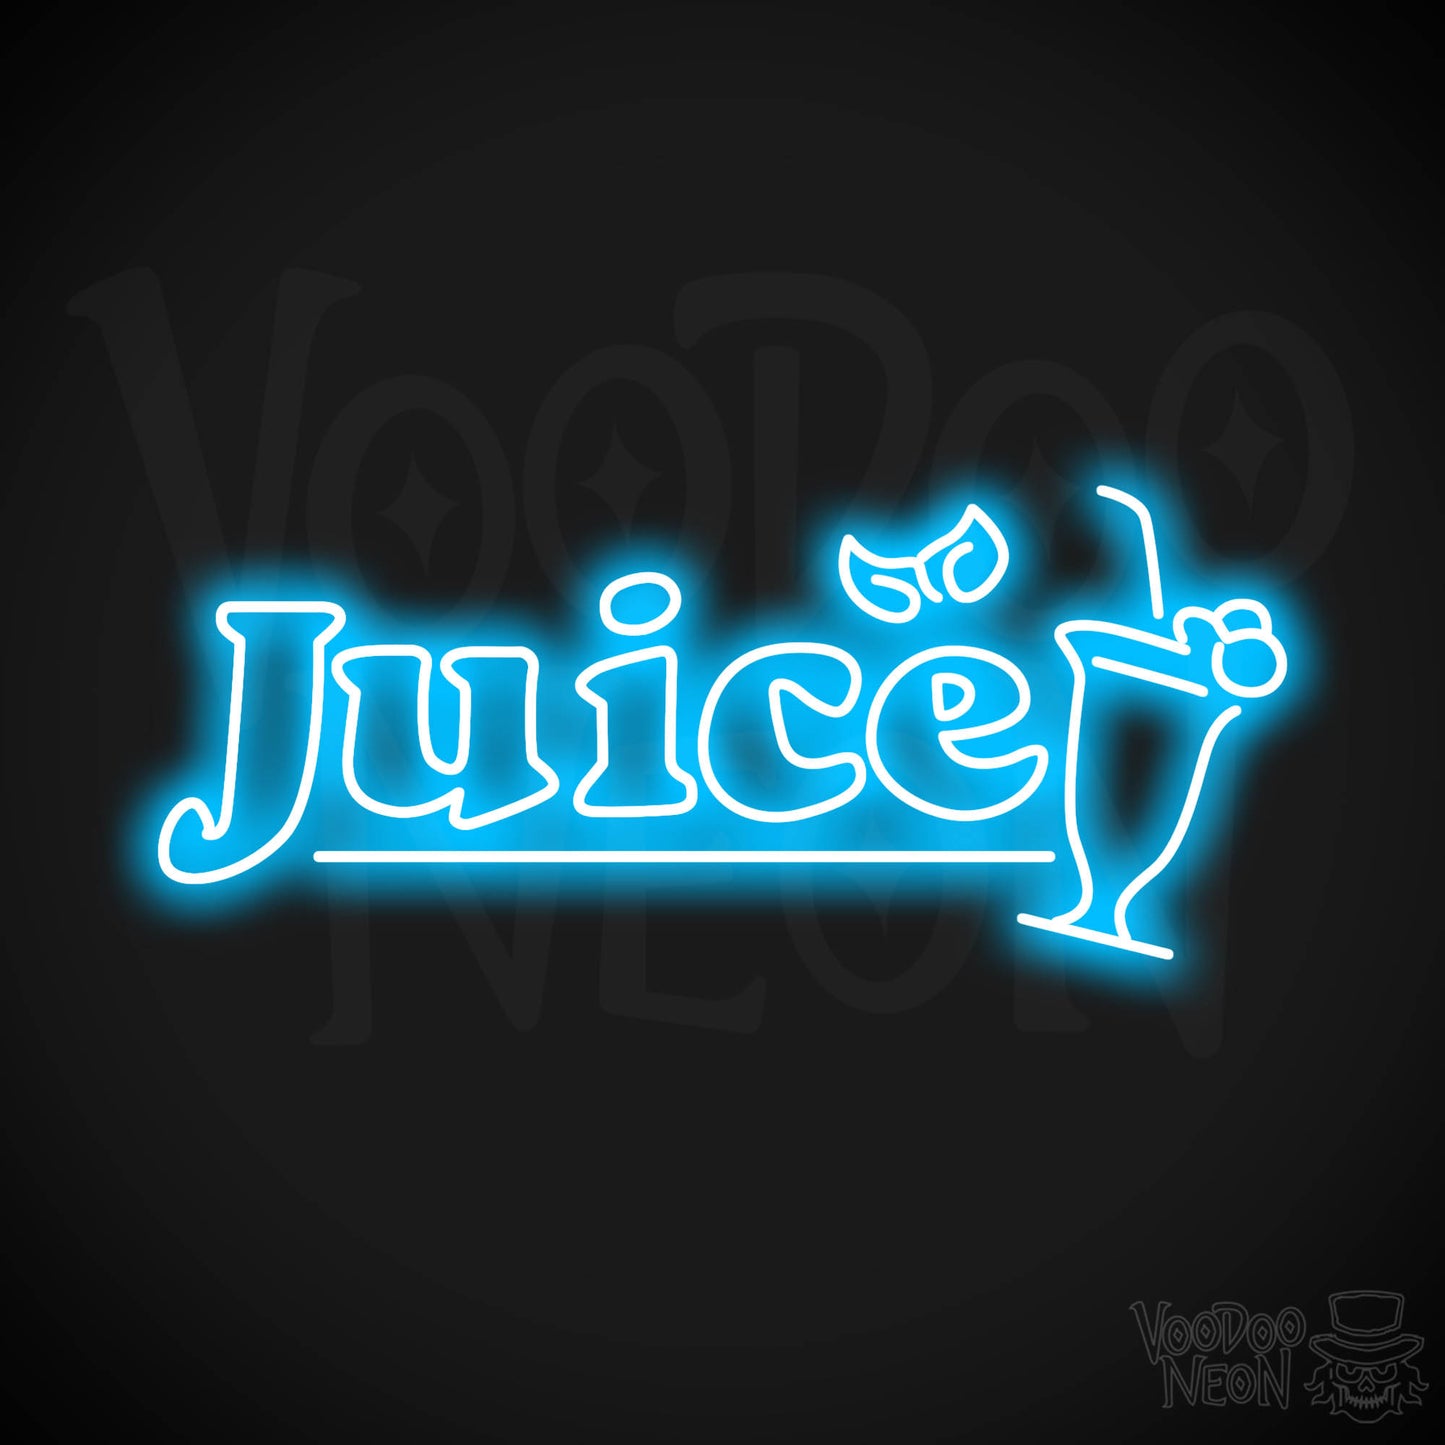 Juice LED Neon - Dark Blue